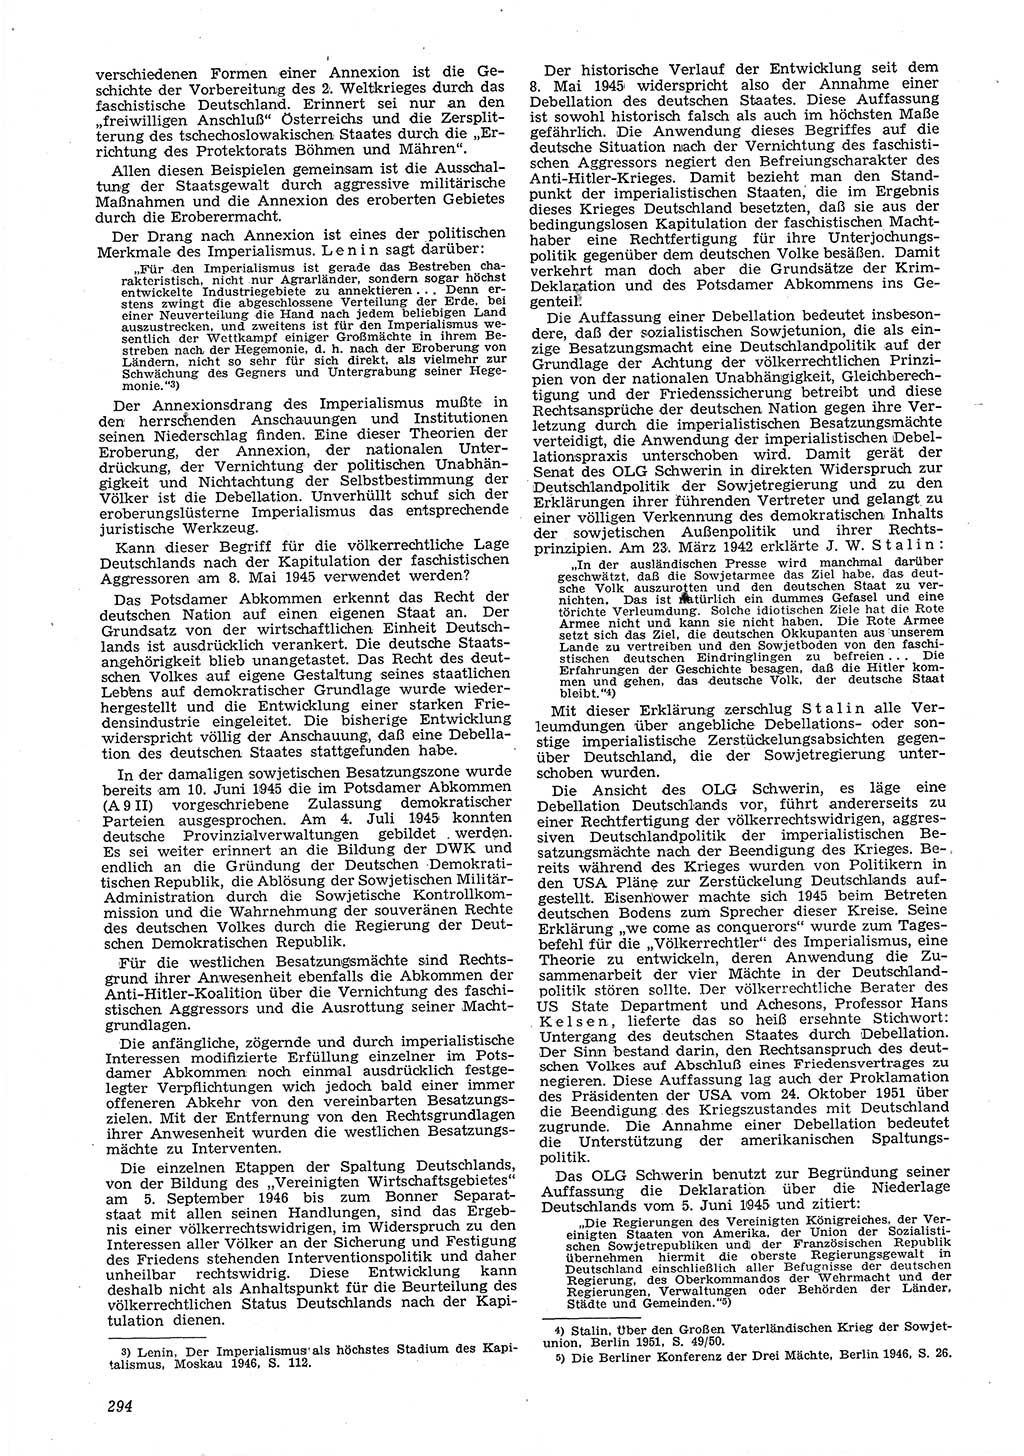 Neue Justiz (NJ), Zeitschrift für Recht und Rechtswissenschaft [Deutsche Demokratische Republik (DDR)], 6. Jahrgang 1952, Seite 294 (NJ DDR 1952, S. 294)